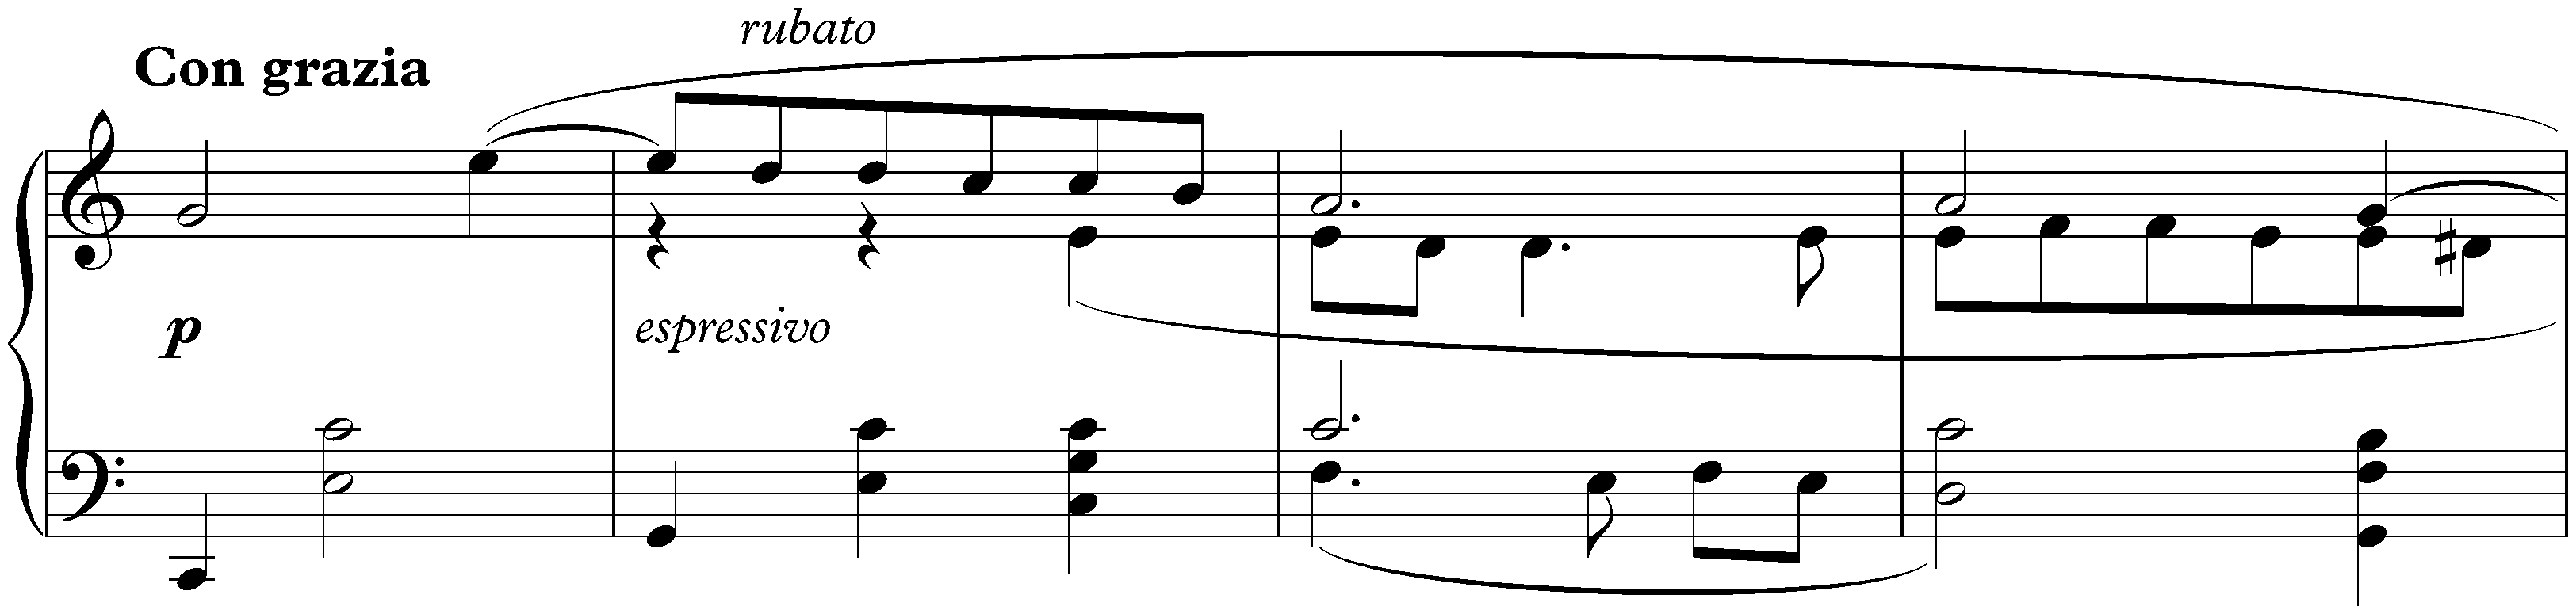 Dix Mazurkas, op. 3; 4. E major